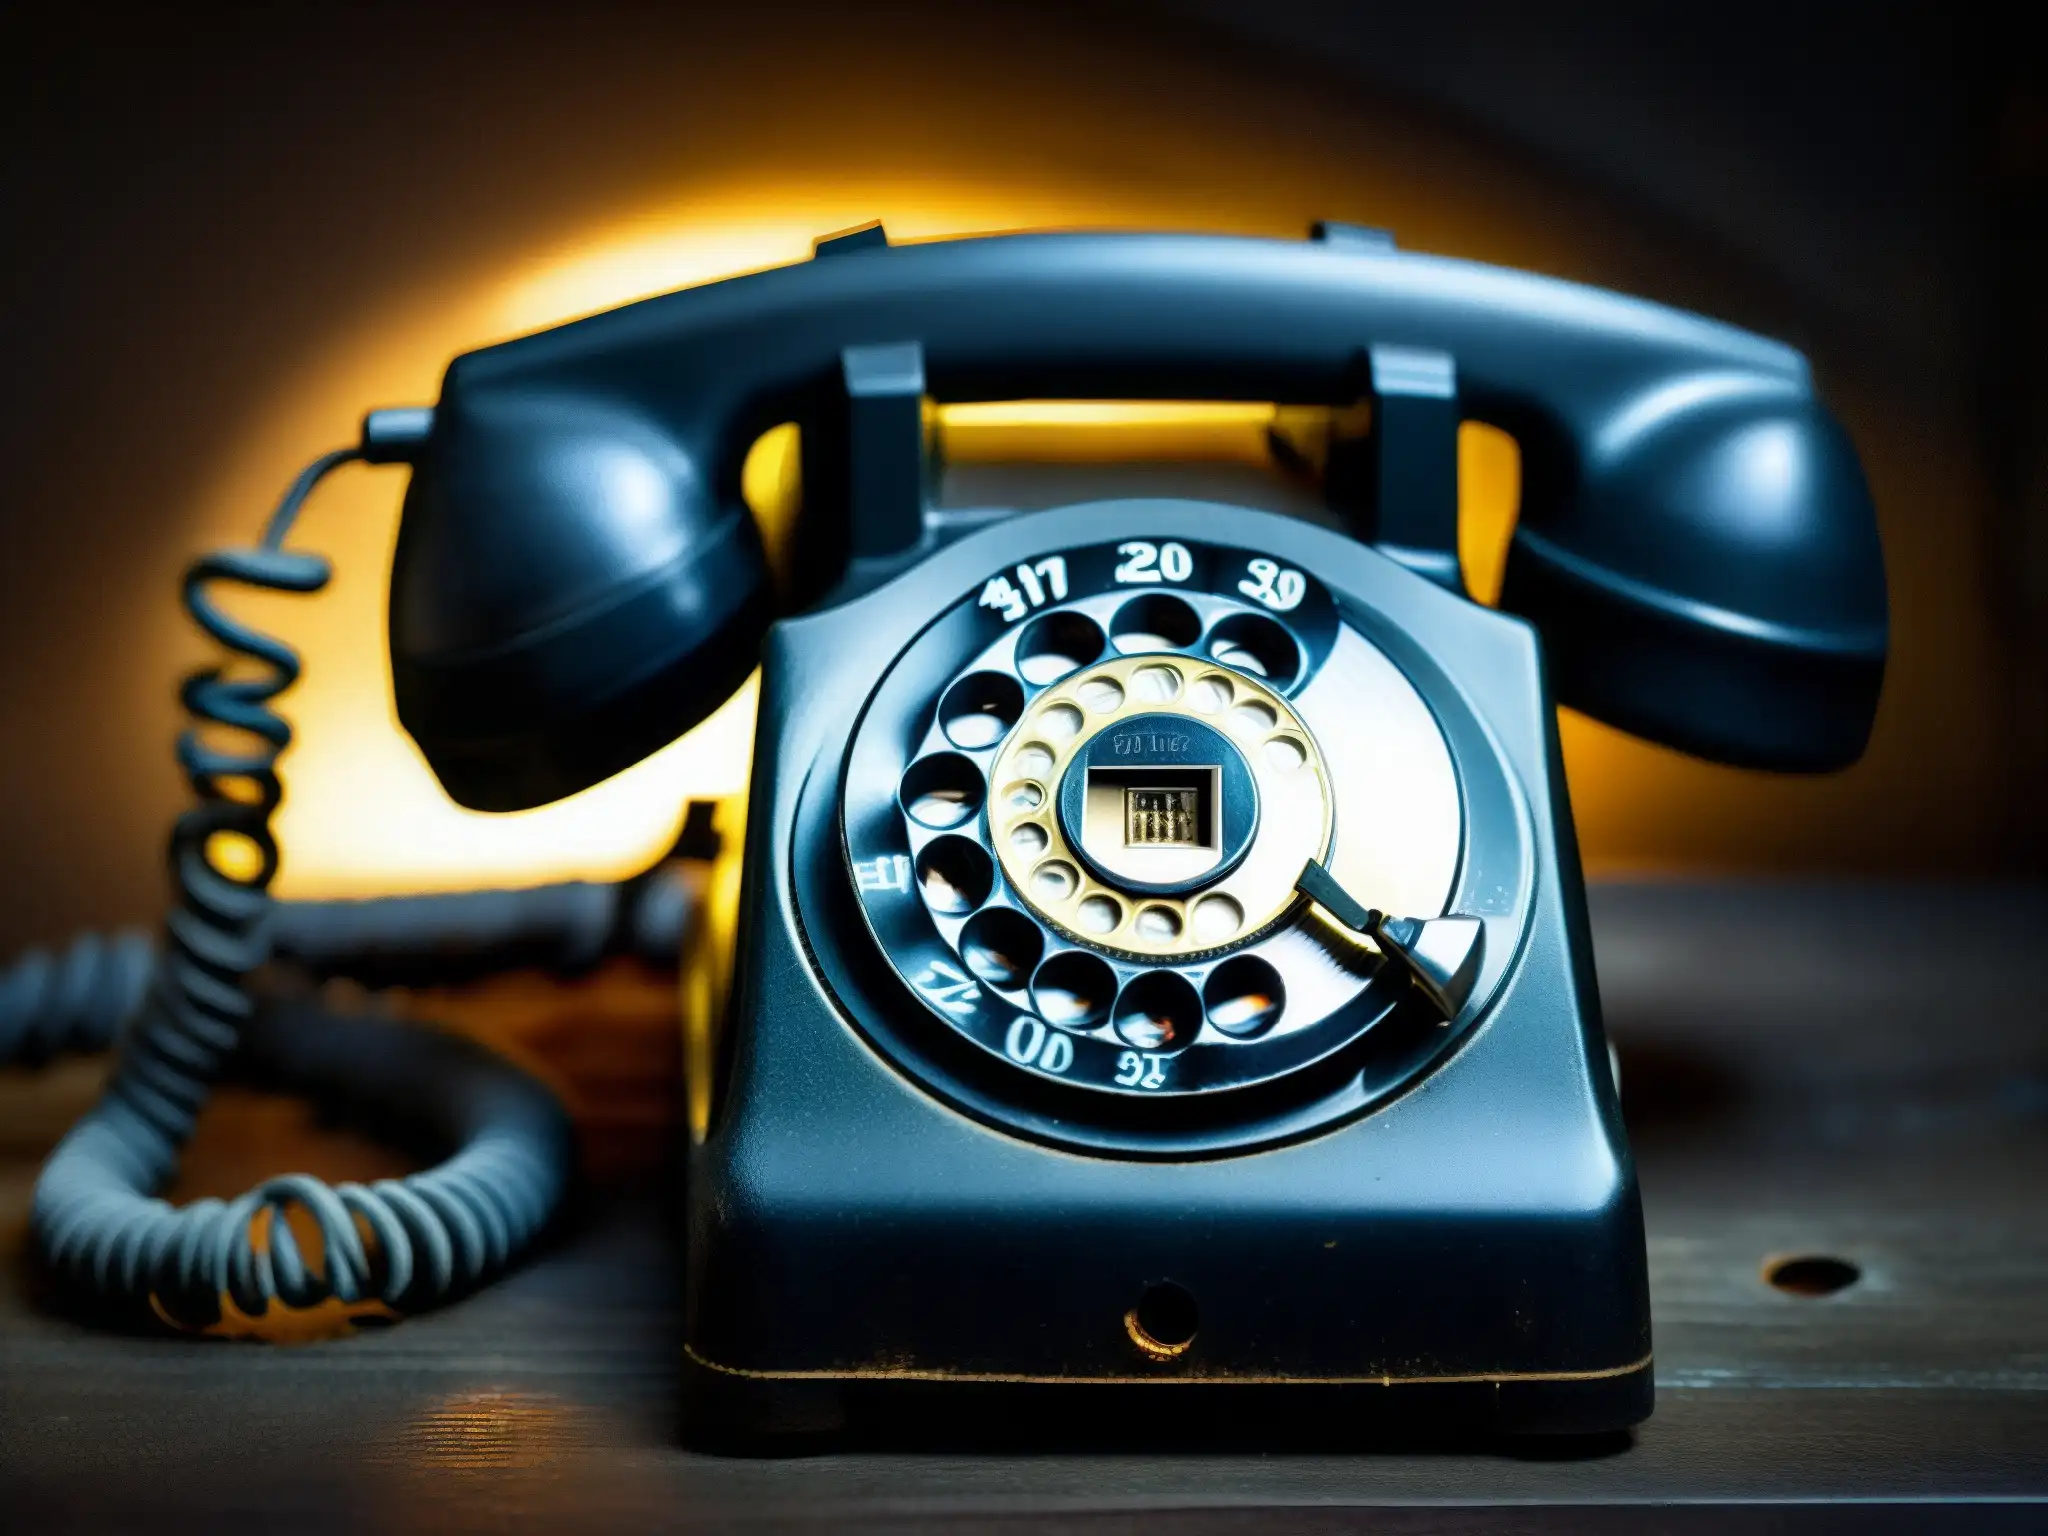 Una imagen inquietante de un antiguo teléfono rotativo desgastado, con números apenas visibles